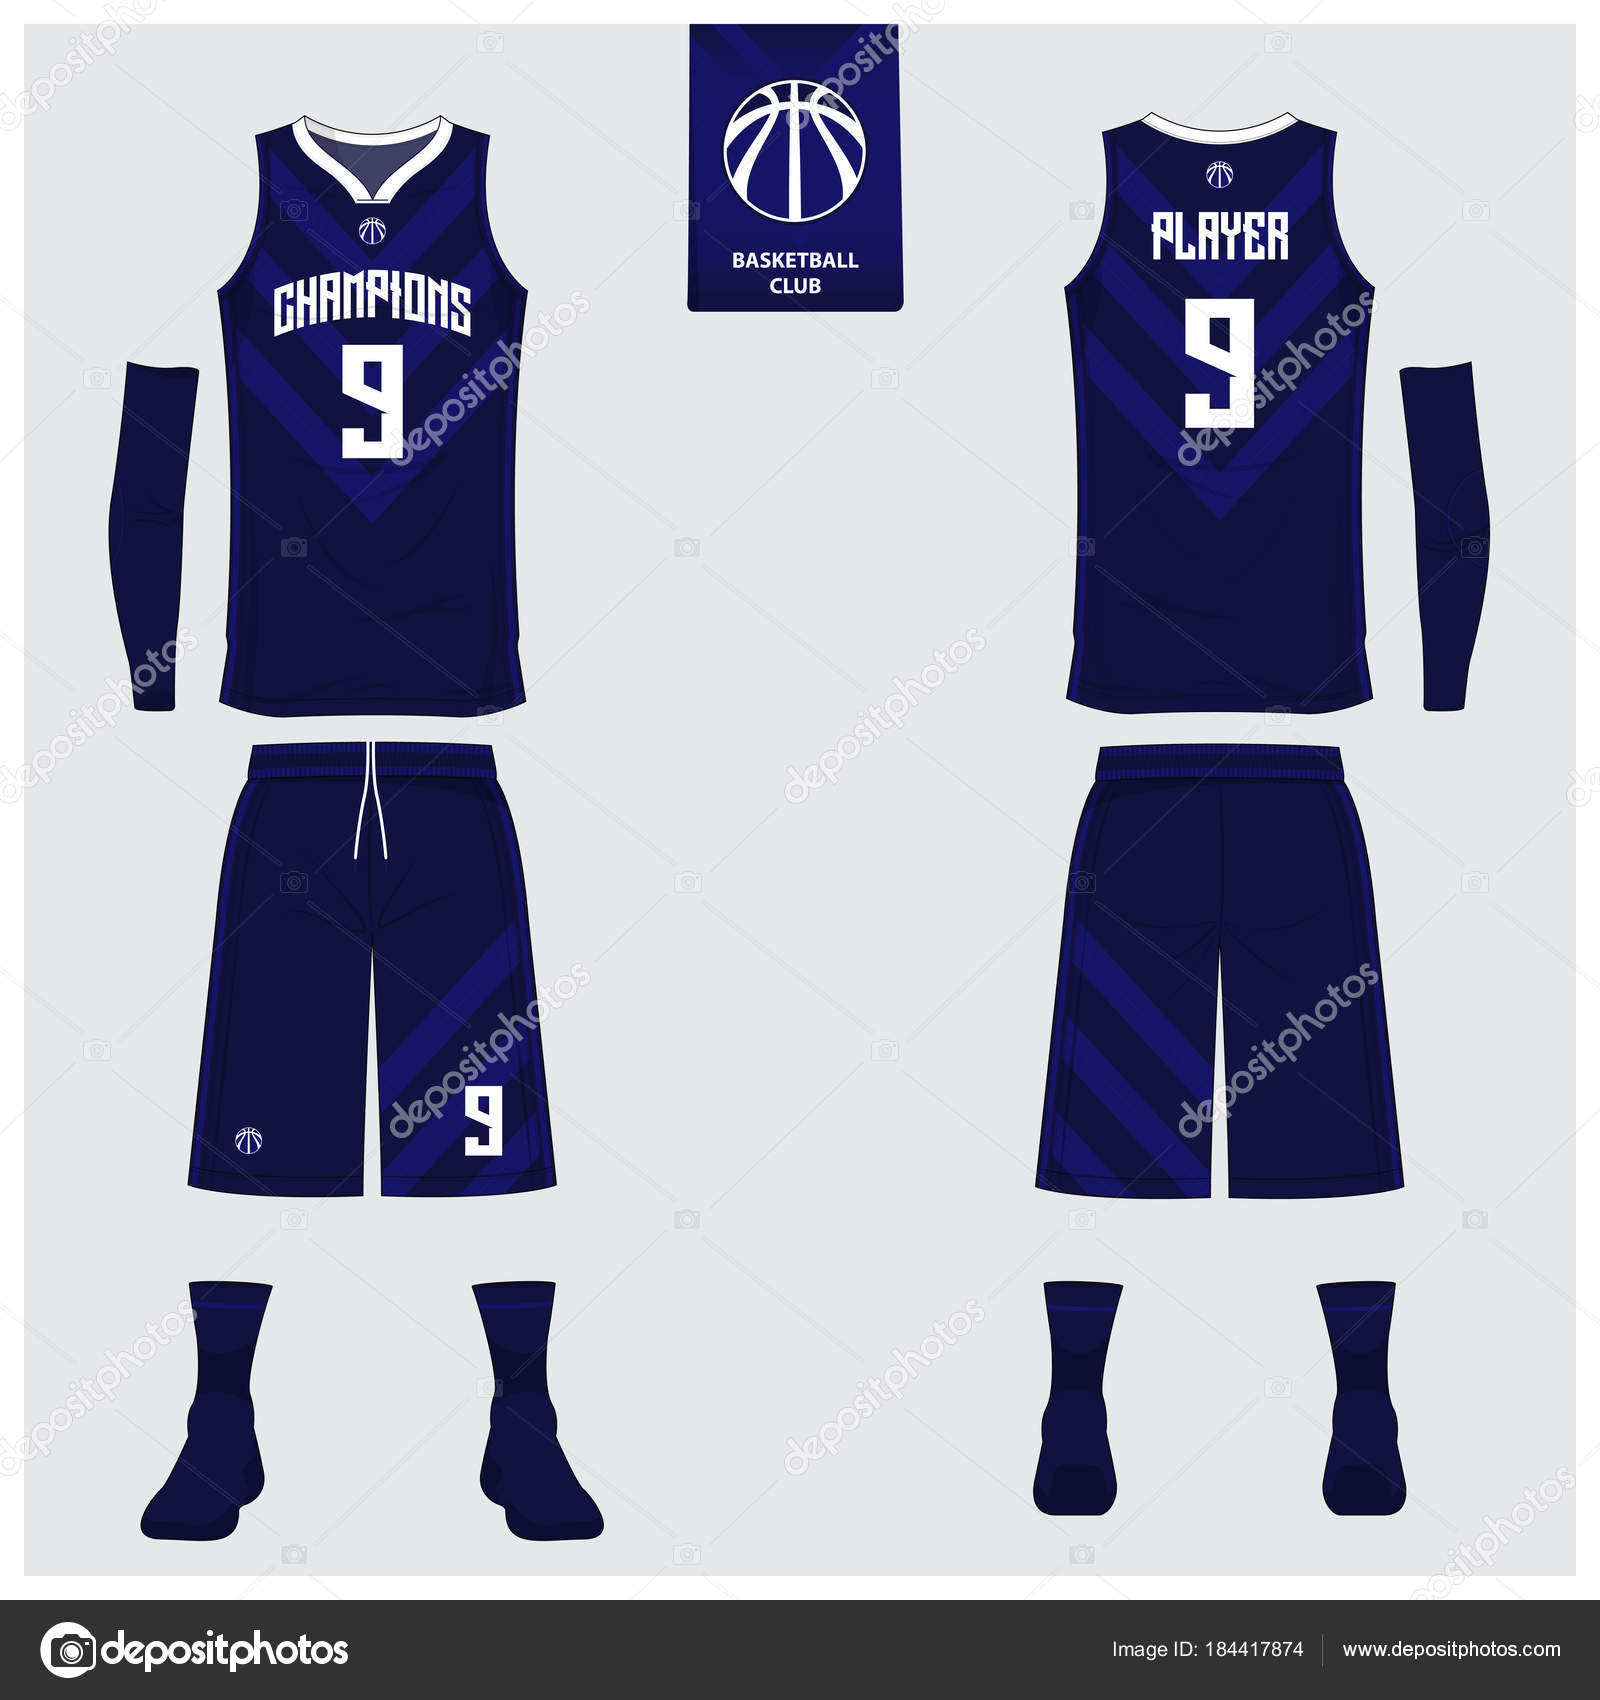 basketball jersey design 2018